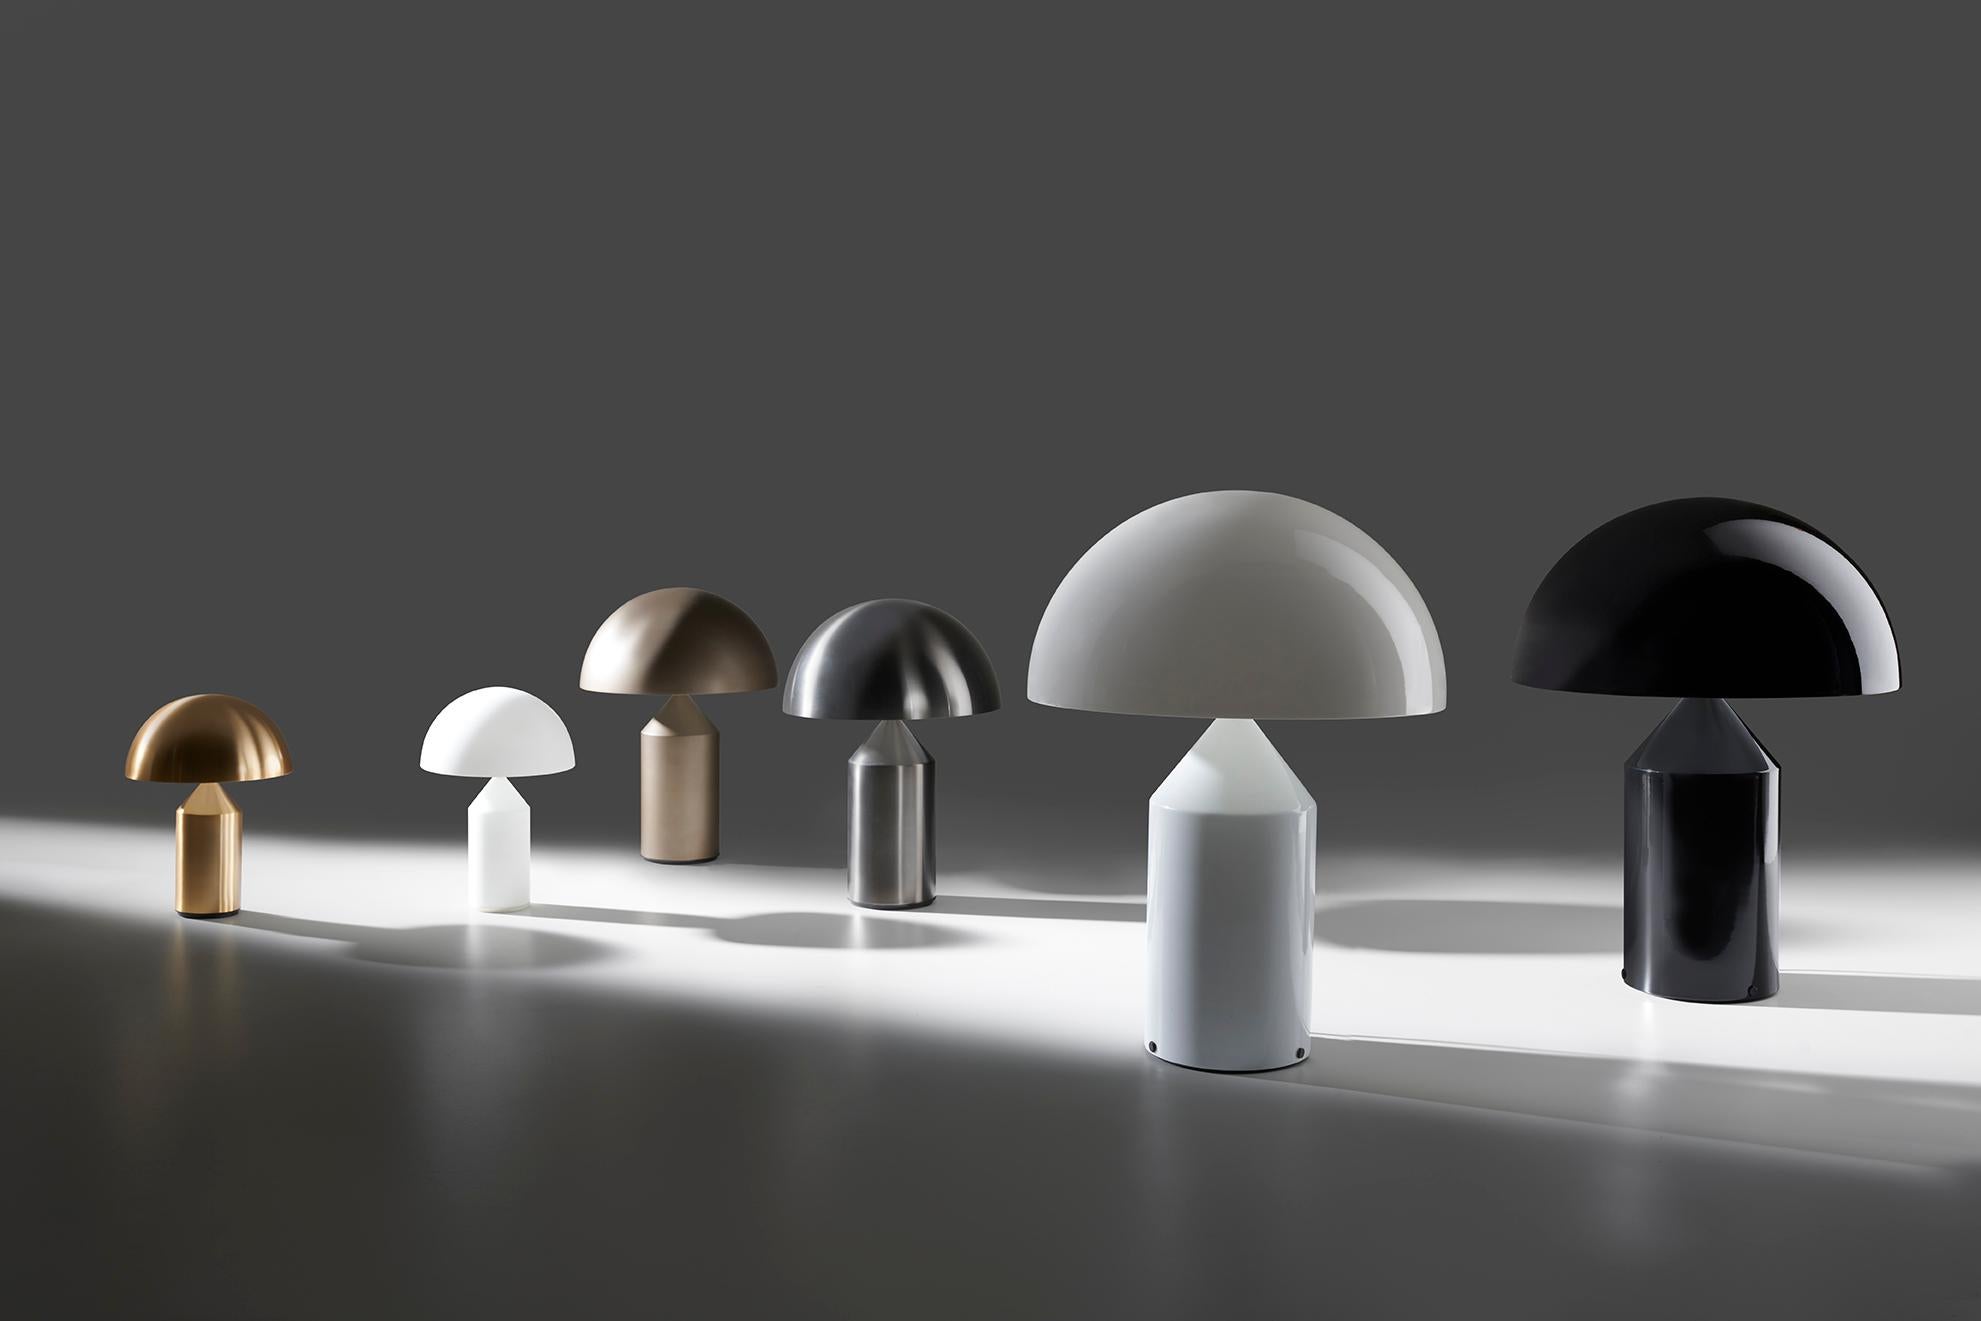 Archétype de la lampe de table et icône du style italien. Atollo, conçu en 1977 et lauréat du prix Compasso d'Oro, a complètement révolutionné la façon d'imaginer la lampe de chevet classique. Composée de formes géométriques essentielles, Atollo est